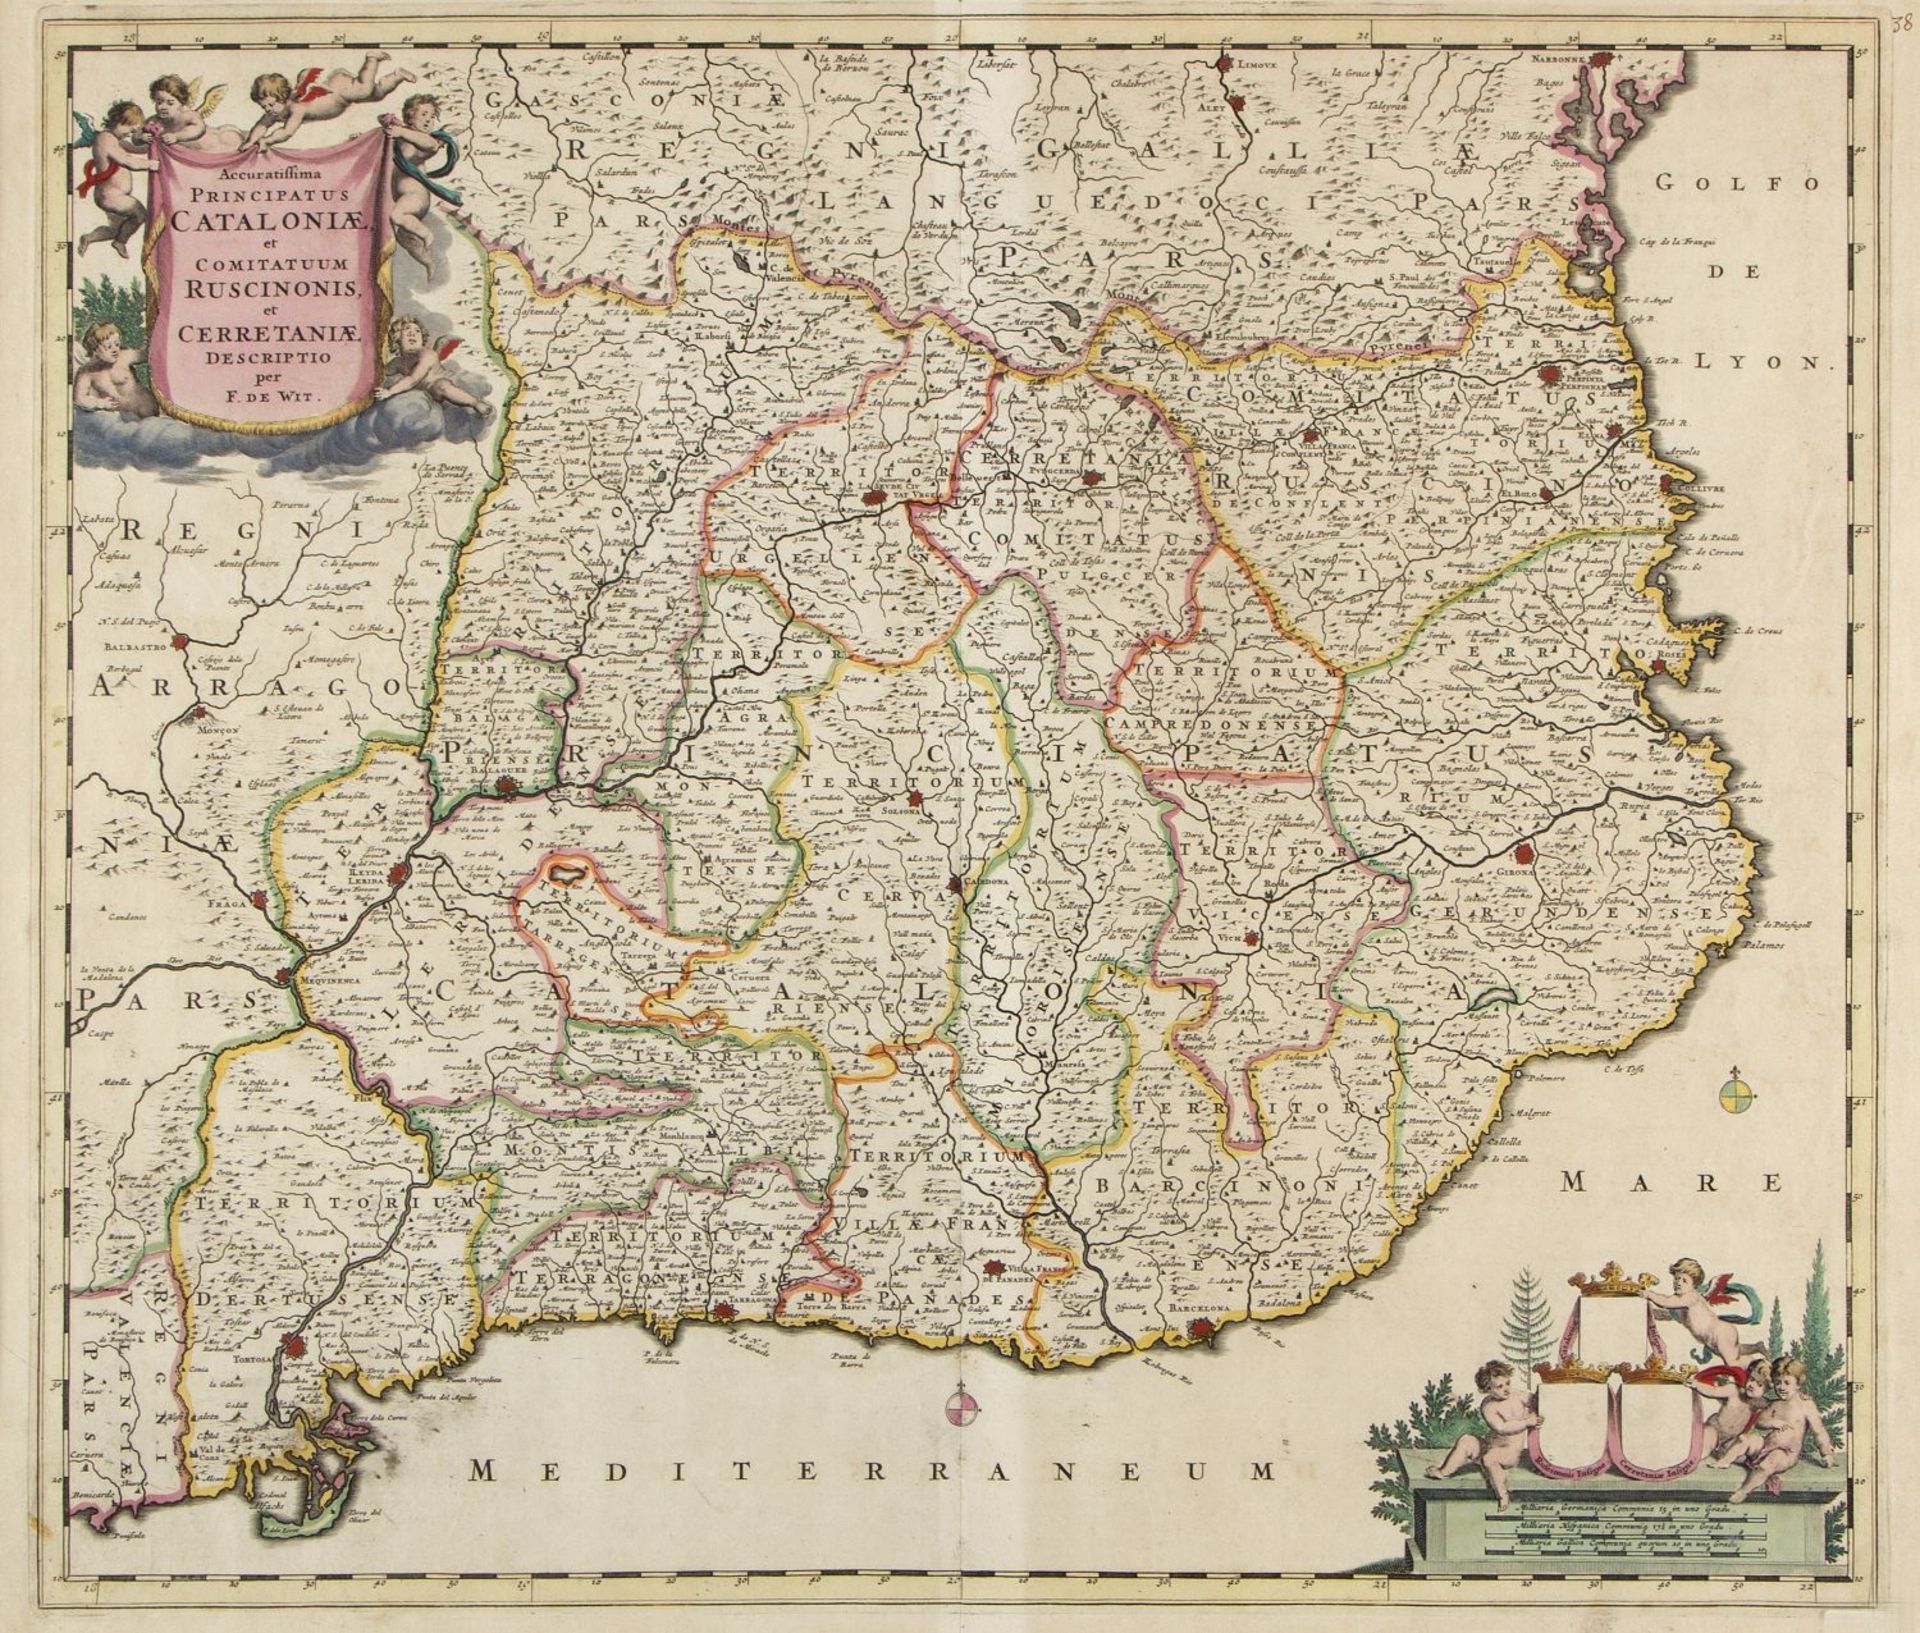 Wit, F. de. Vischer, N. Blaue, G. u.a. Principatus Cataloniae. Hispaniae et Portugalliae. Languedoc - Image 5 of 6